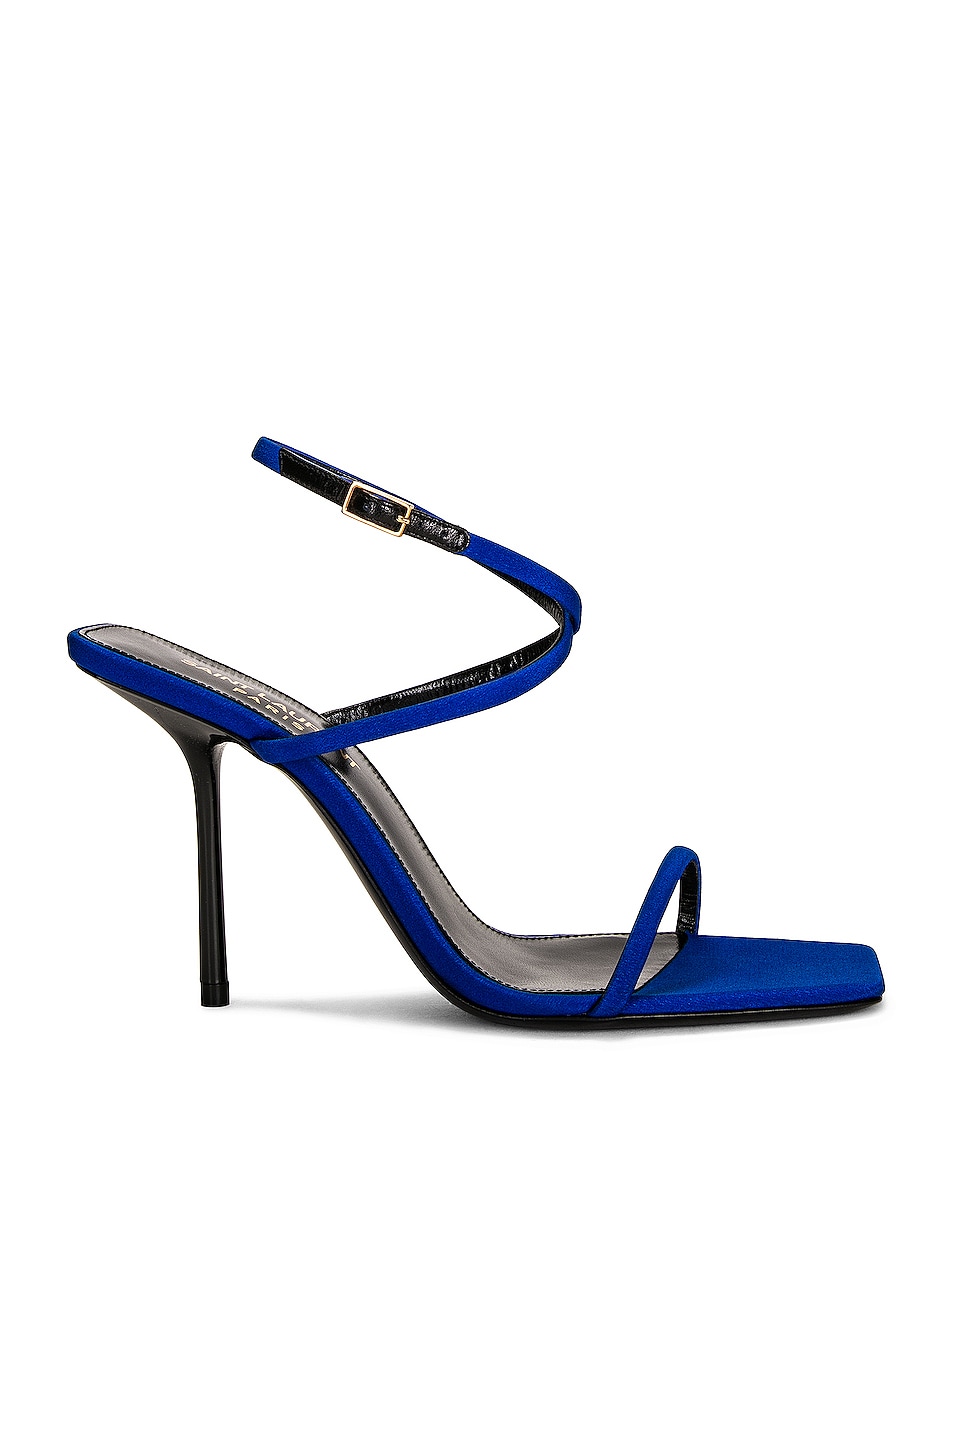 Saint Laurent Baliqua Sandals in Picasso Blue | FWRD